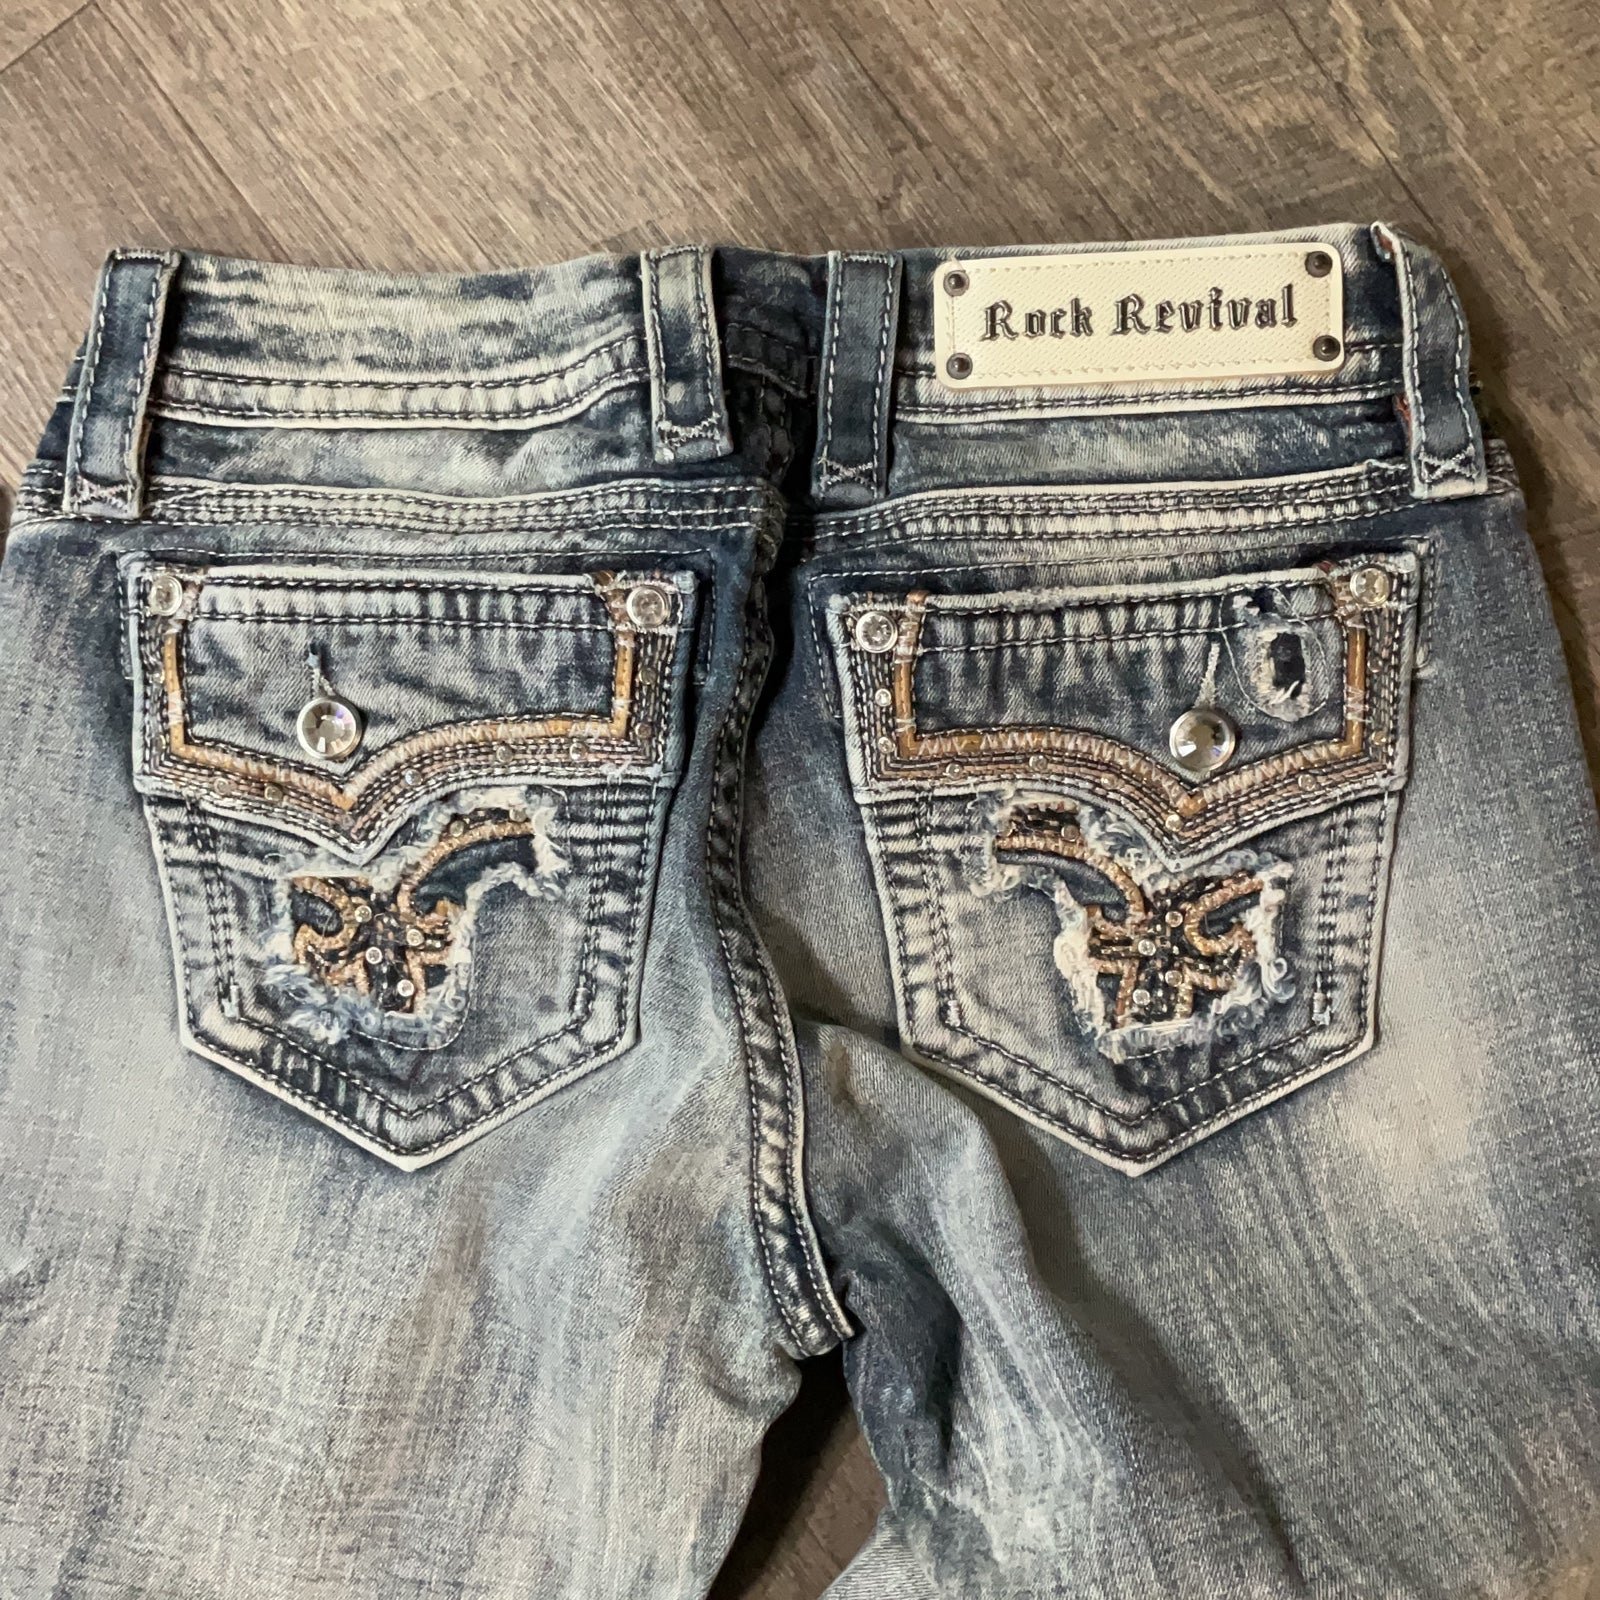 Buy Rock Revival betty boot cut women’s jeans size 28 papXO4fdo Store Online